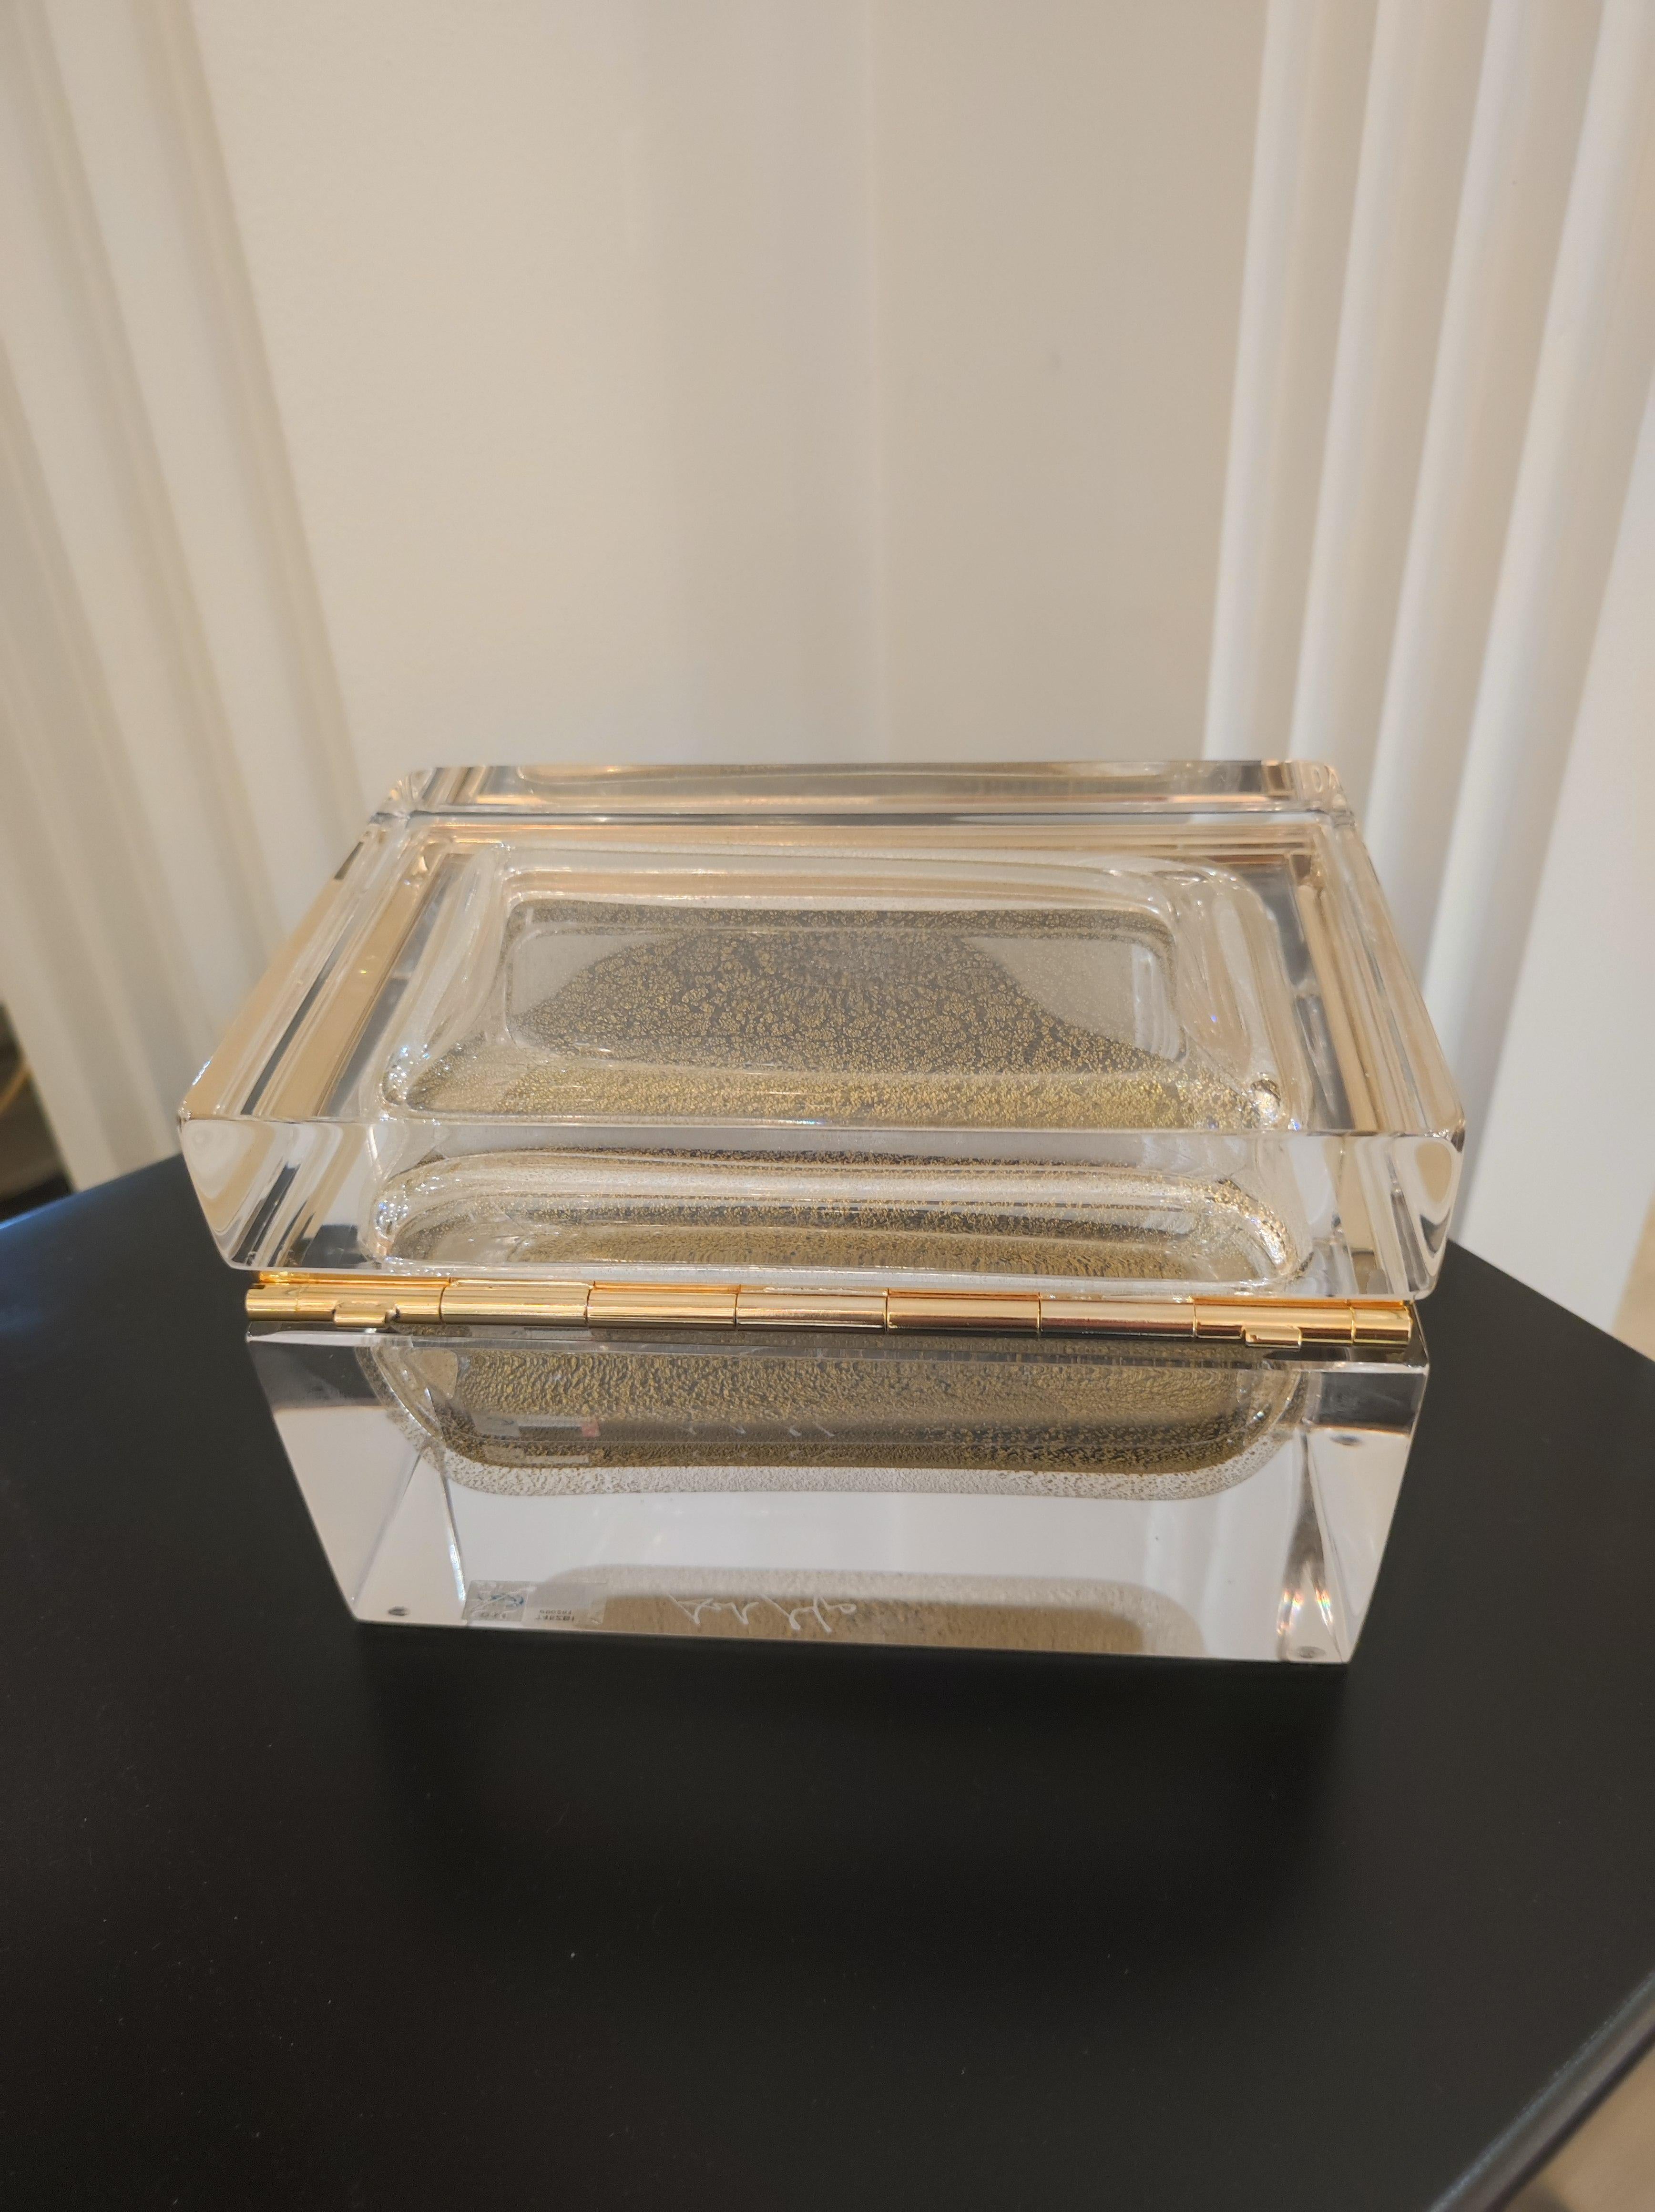 Alessandro Mandruzzato, Schachtel aus Murano-Glas, 
Einsatz aus Murano-Glas mit Goldglitzern in durchscheinendem Murano-Glas,
24 Karat Goldauflage.
Jedes Stück ist einzigartig und signiert.